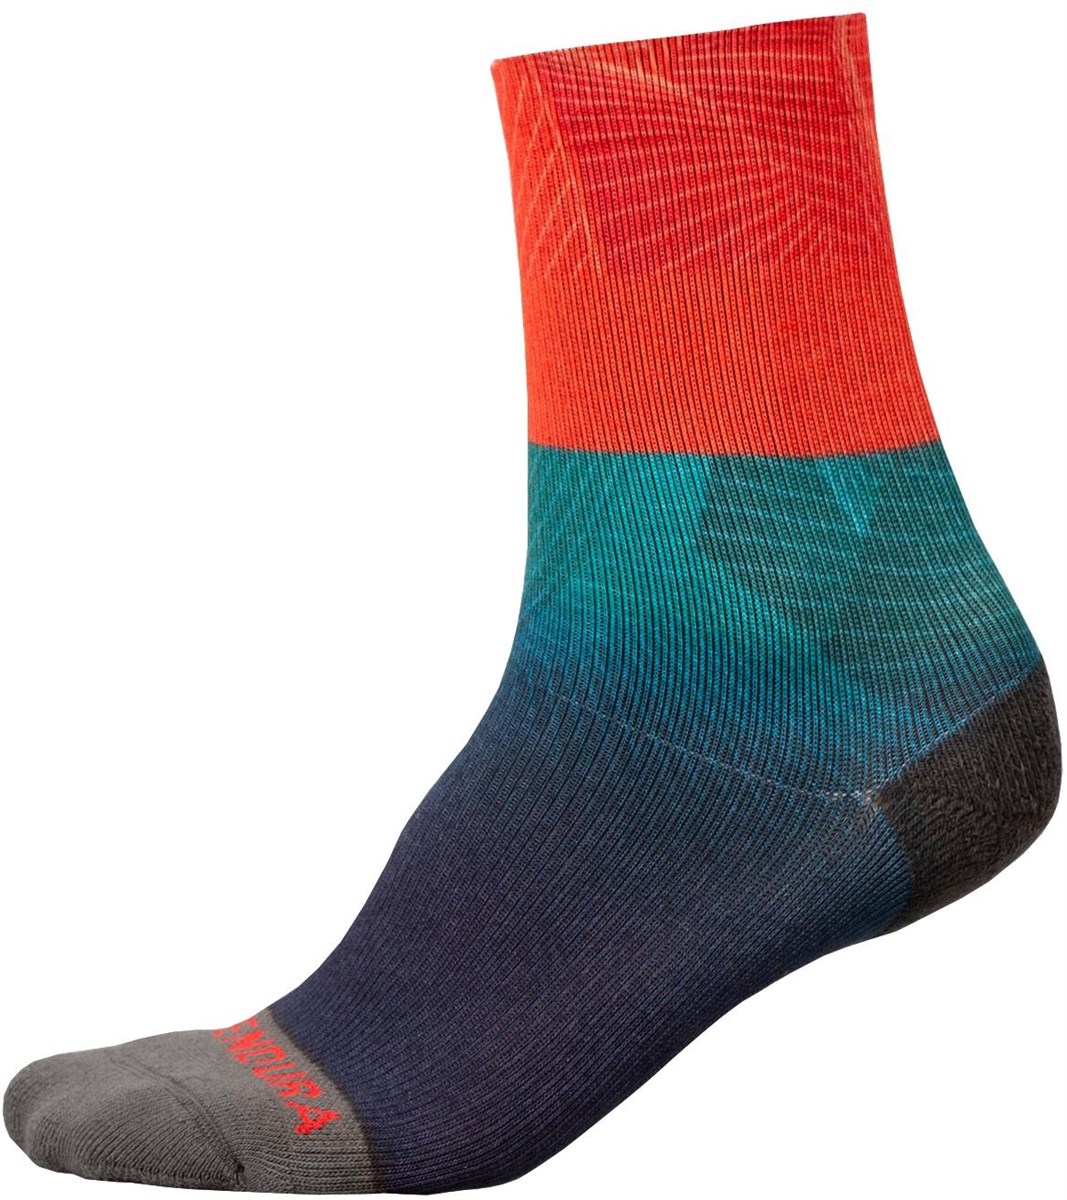 Endura Lines LTD Socks product image